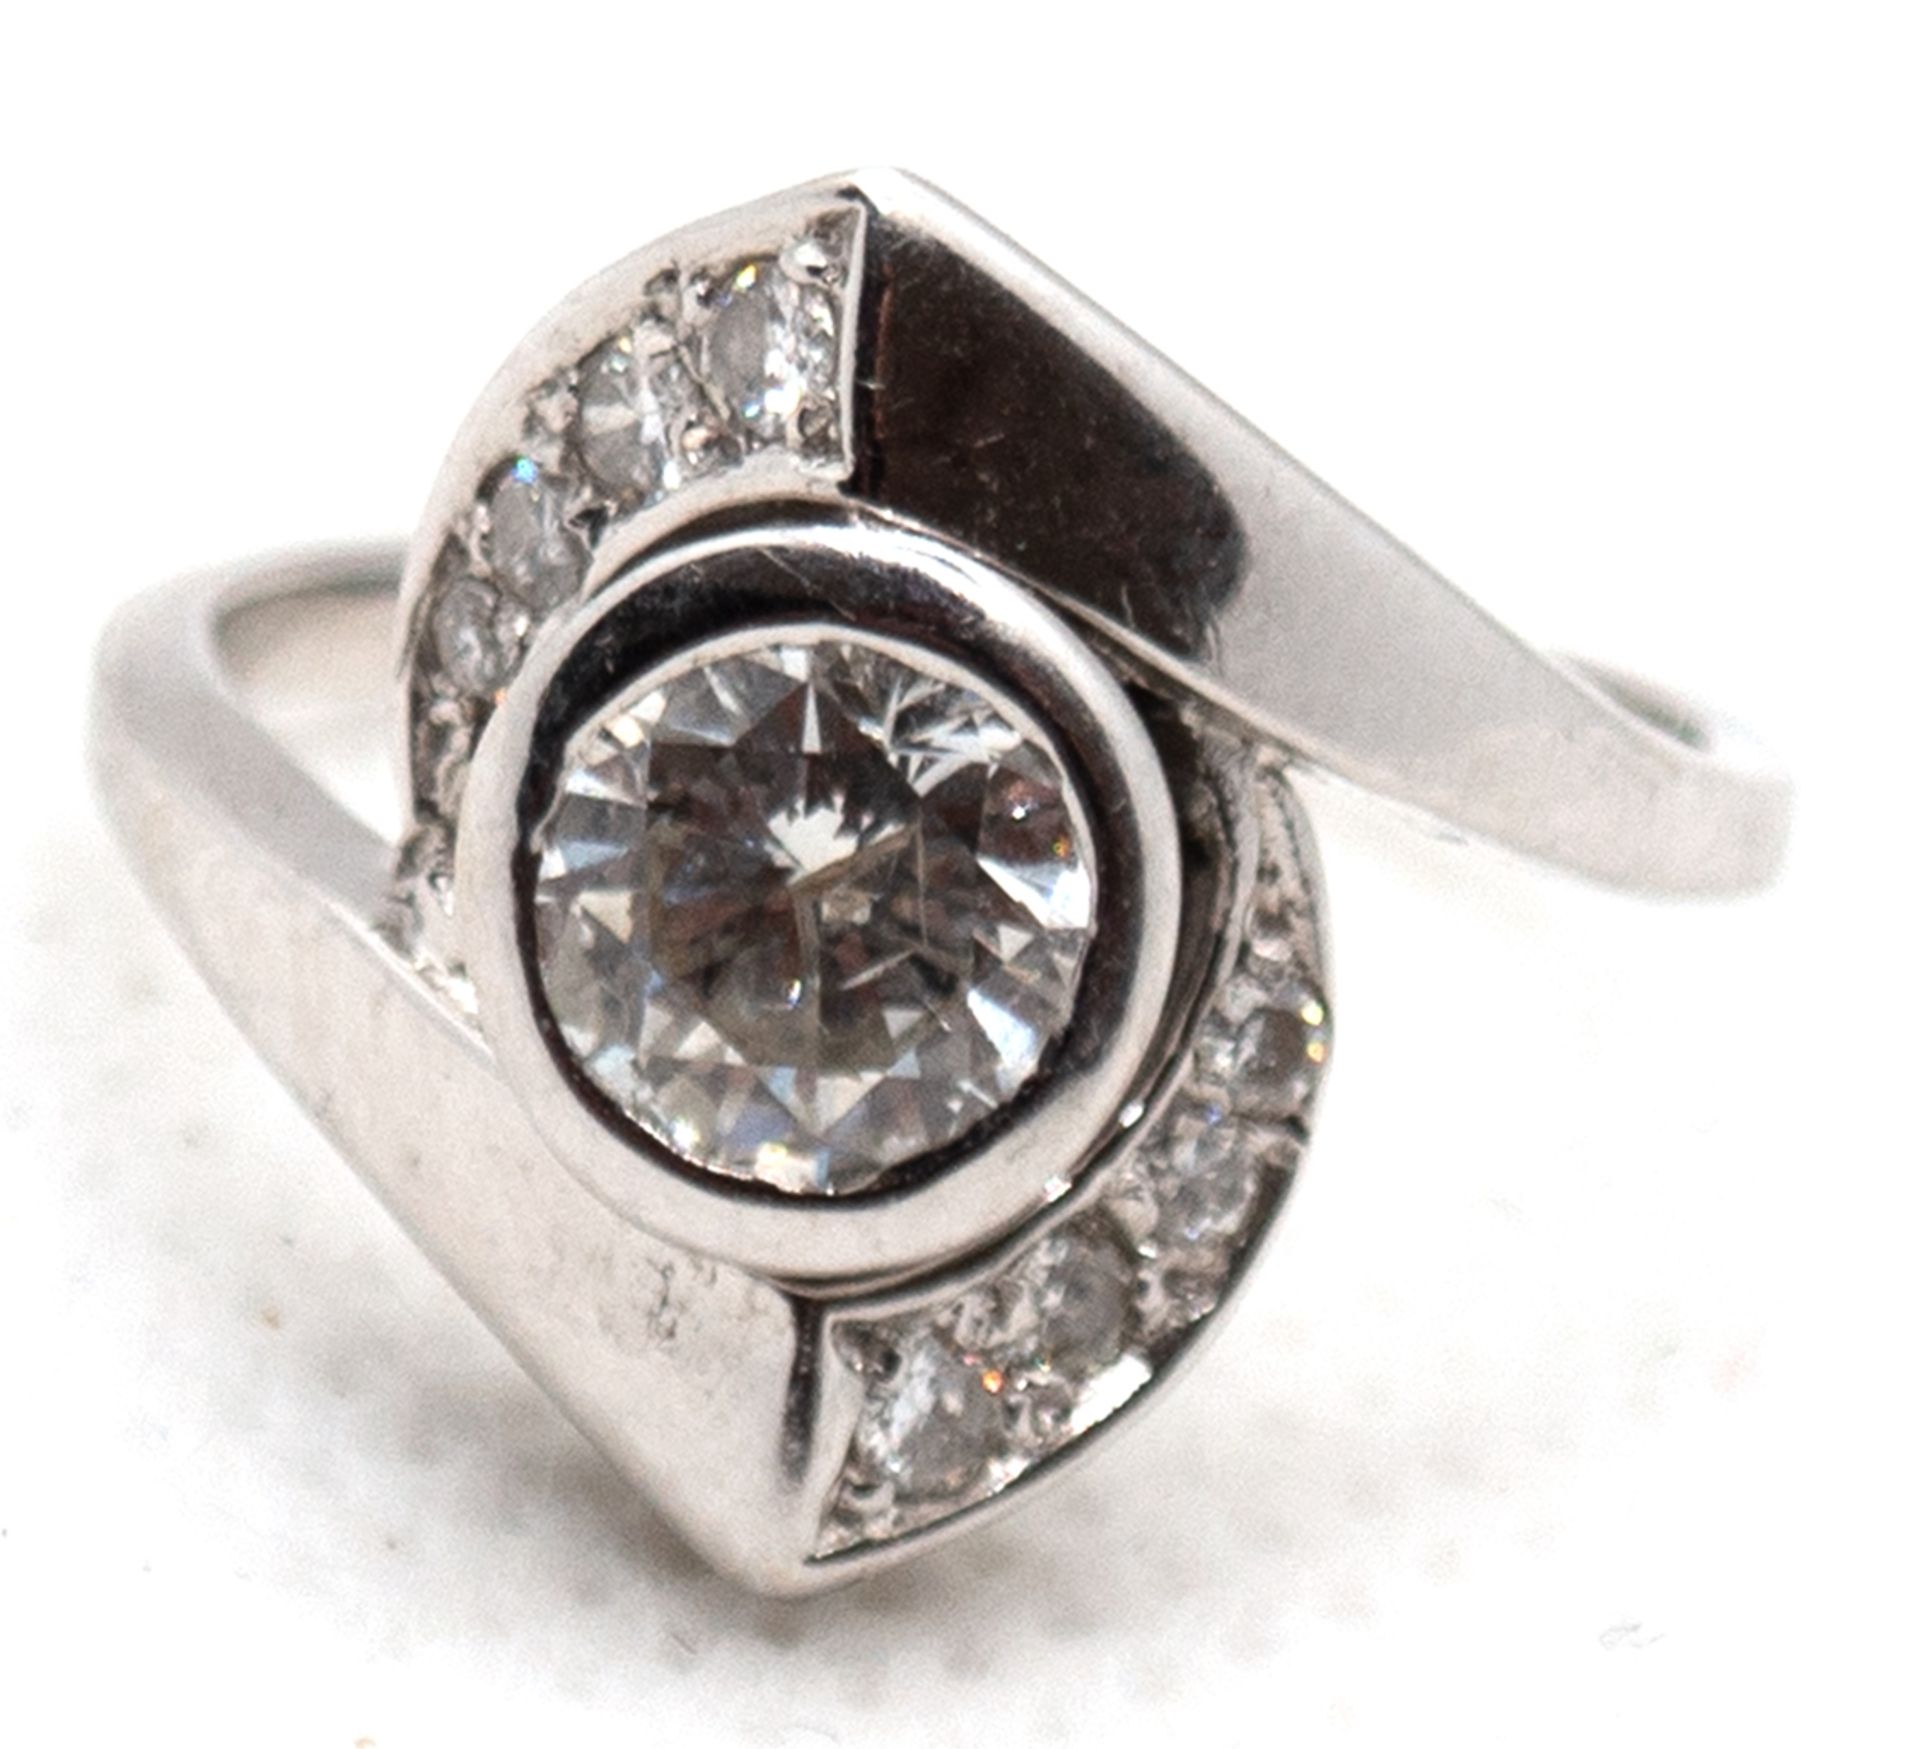 Diamant-Ring, 585er WG, mittig Diamant von ca. 0,75 ct. , ges. ca. 1,0 ct., Ges.-Gew. 4,1 g, RG 51